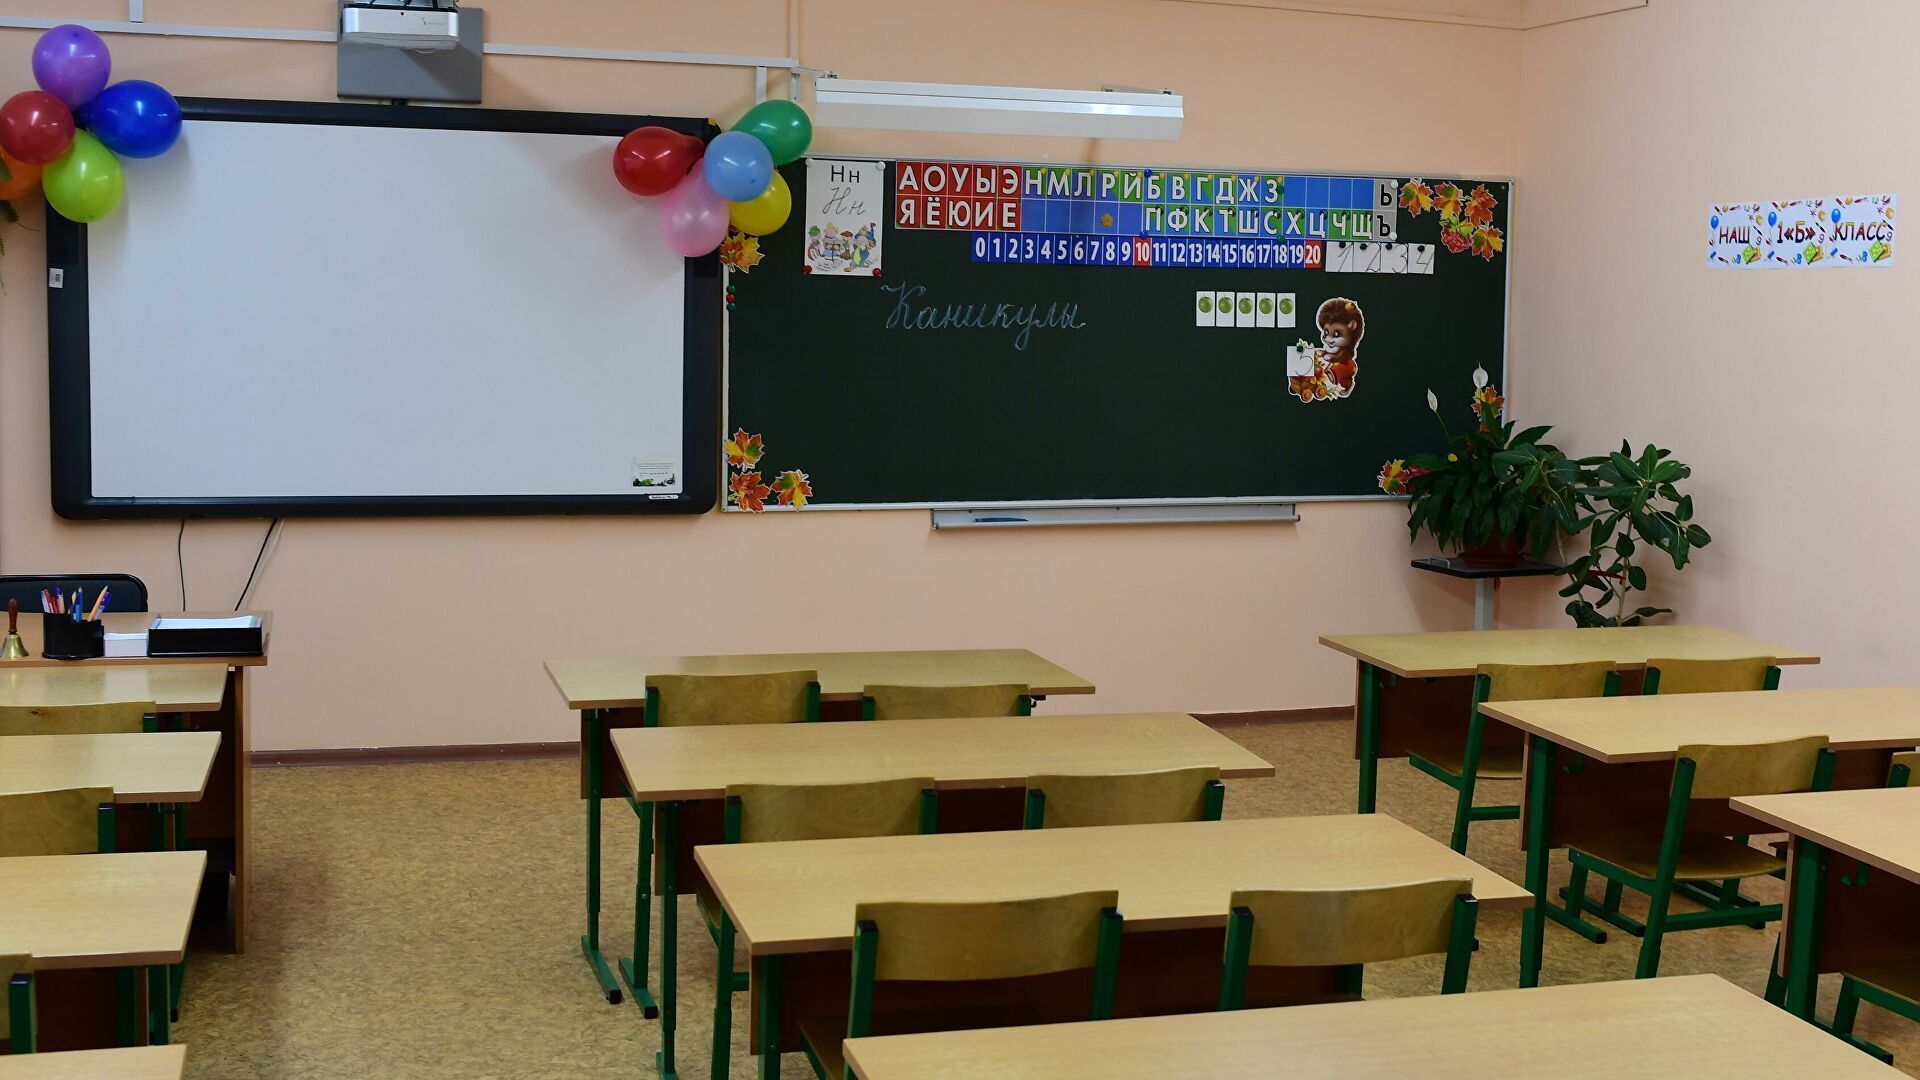 Каникулы в школах москвы. Школьные каникулы. Школьники уходят на каникулы. Пустой класс.